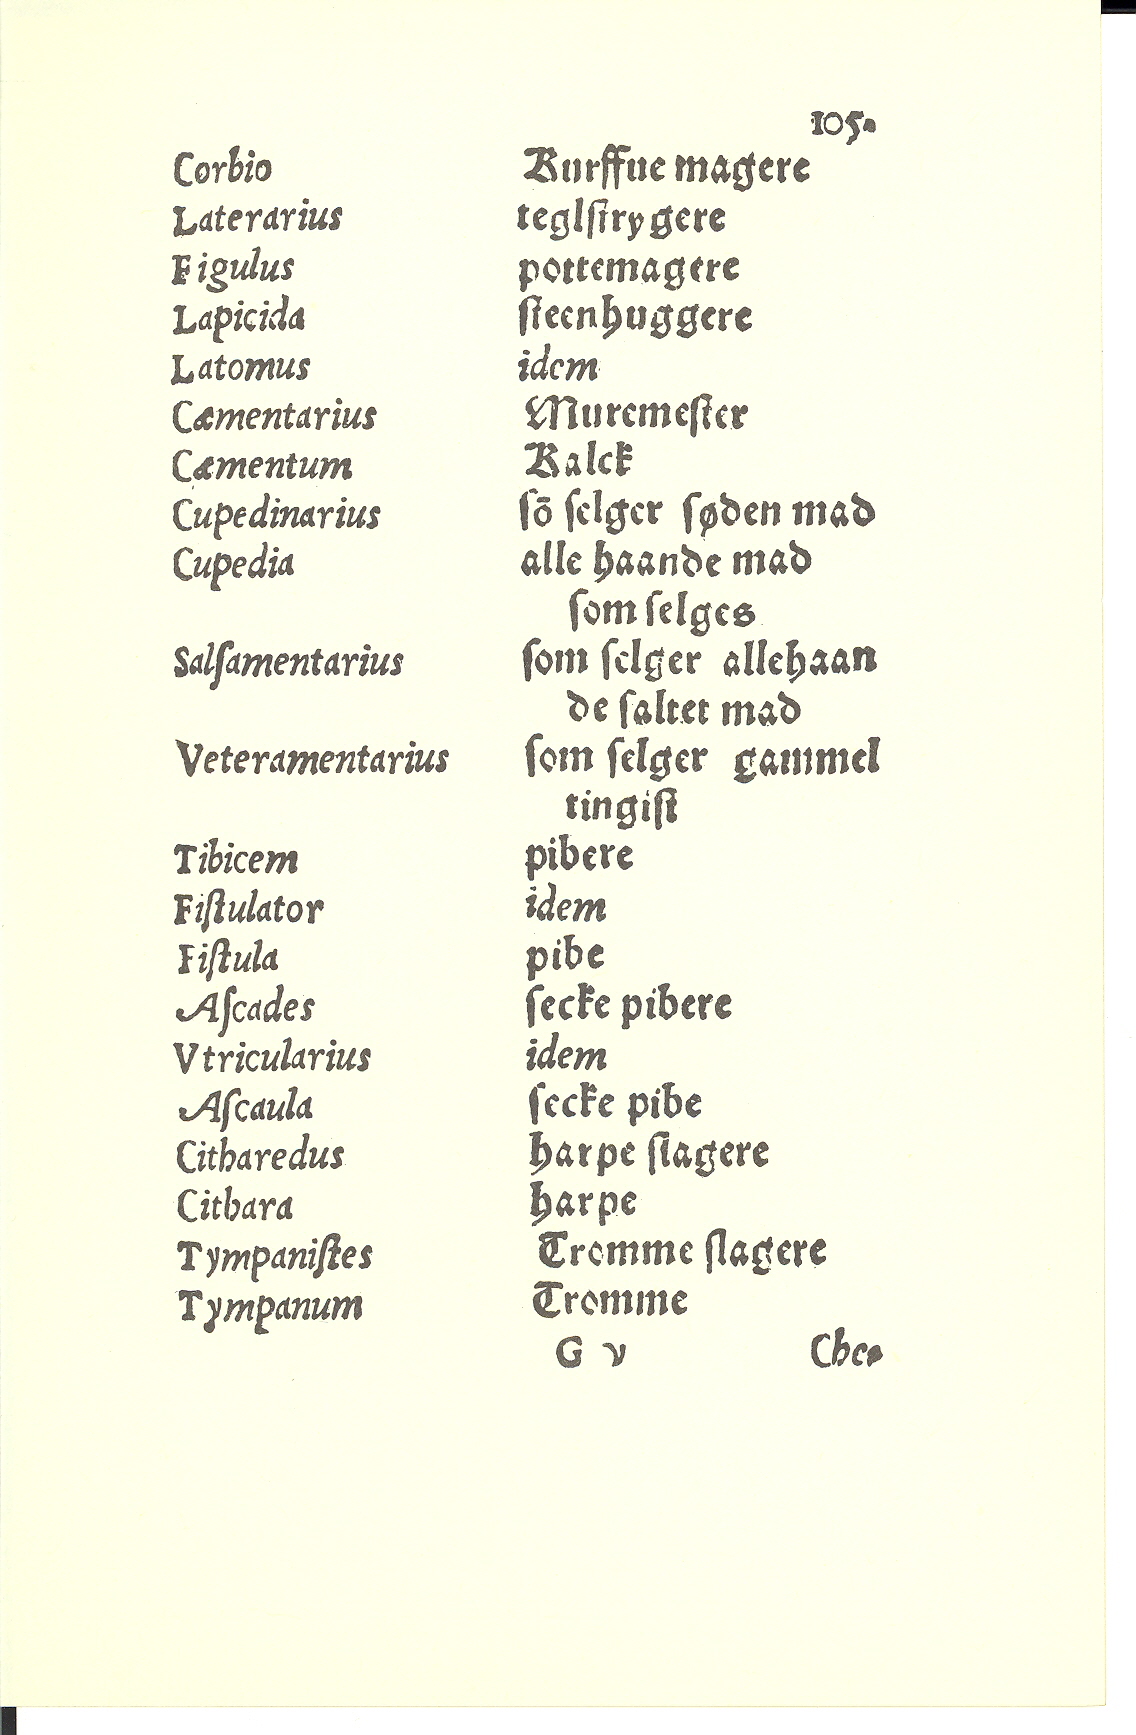 Tursen 1561, Side: 105